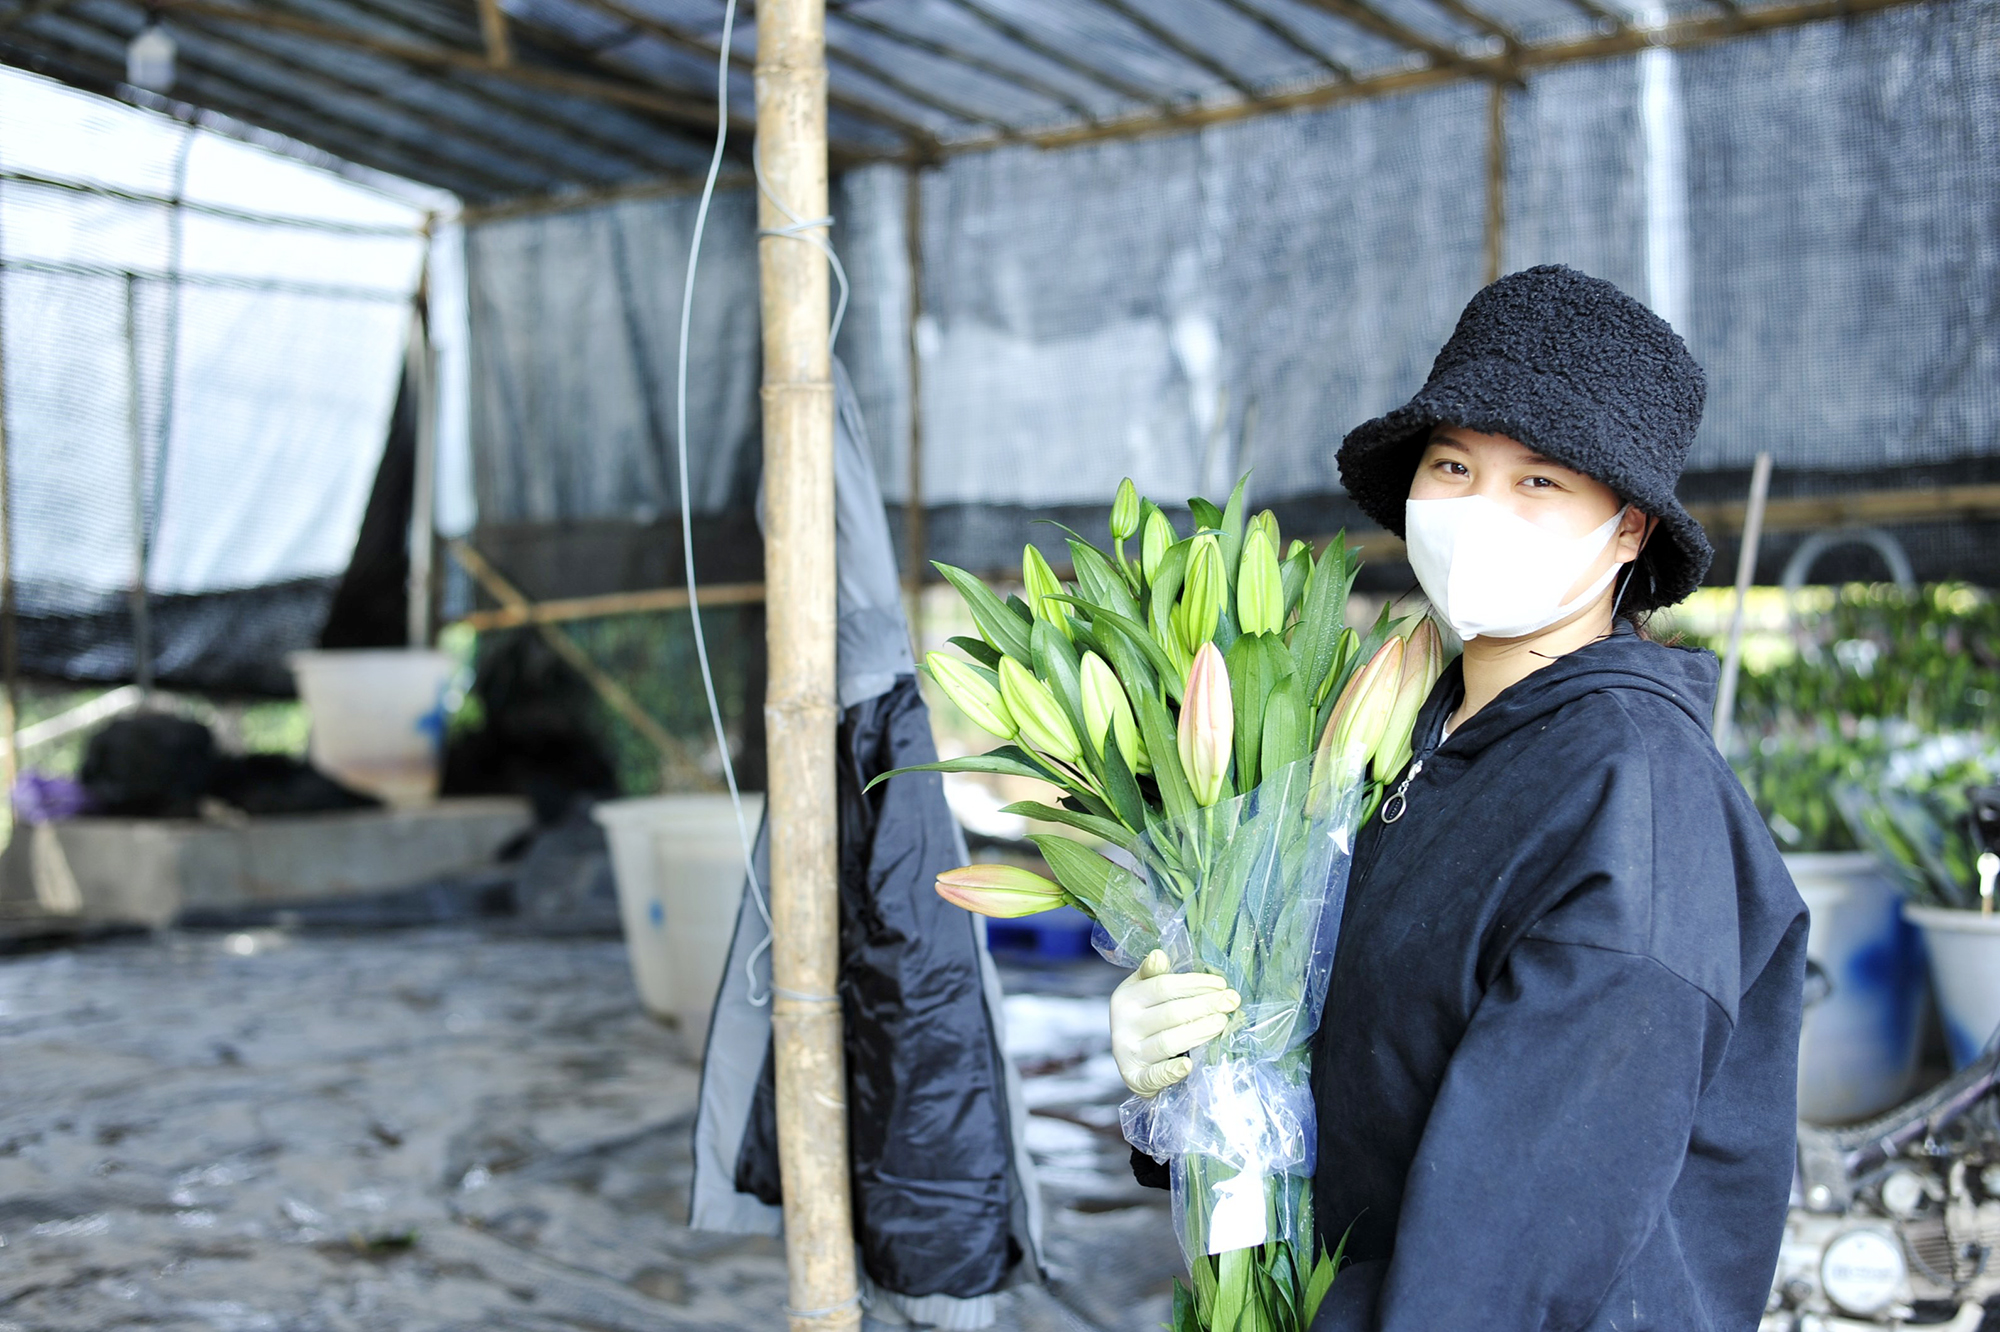 Hoa nở “lệch múi giờ”, nông dân Hà Nội thu hoạch sớm để bảo quản lạnh, chờ phục vụ người chơi đúng dịp Tết - Ảnh 11.